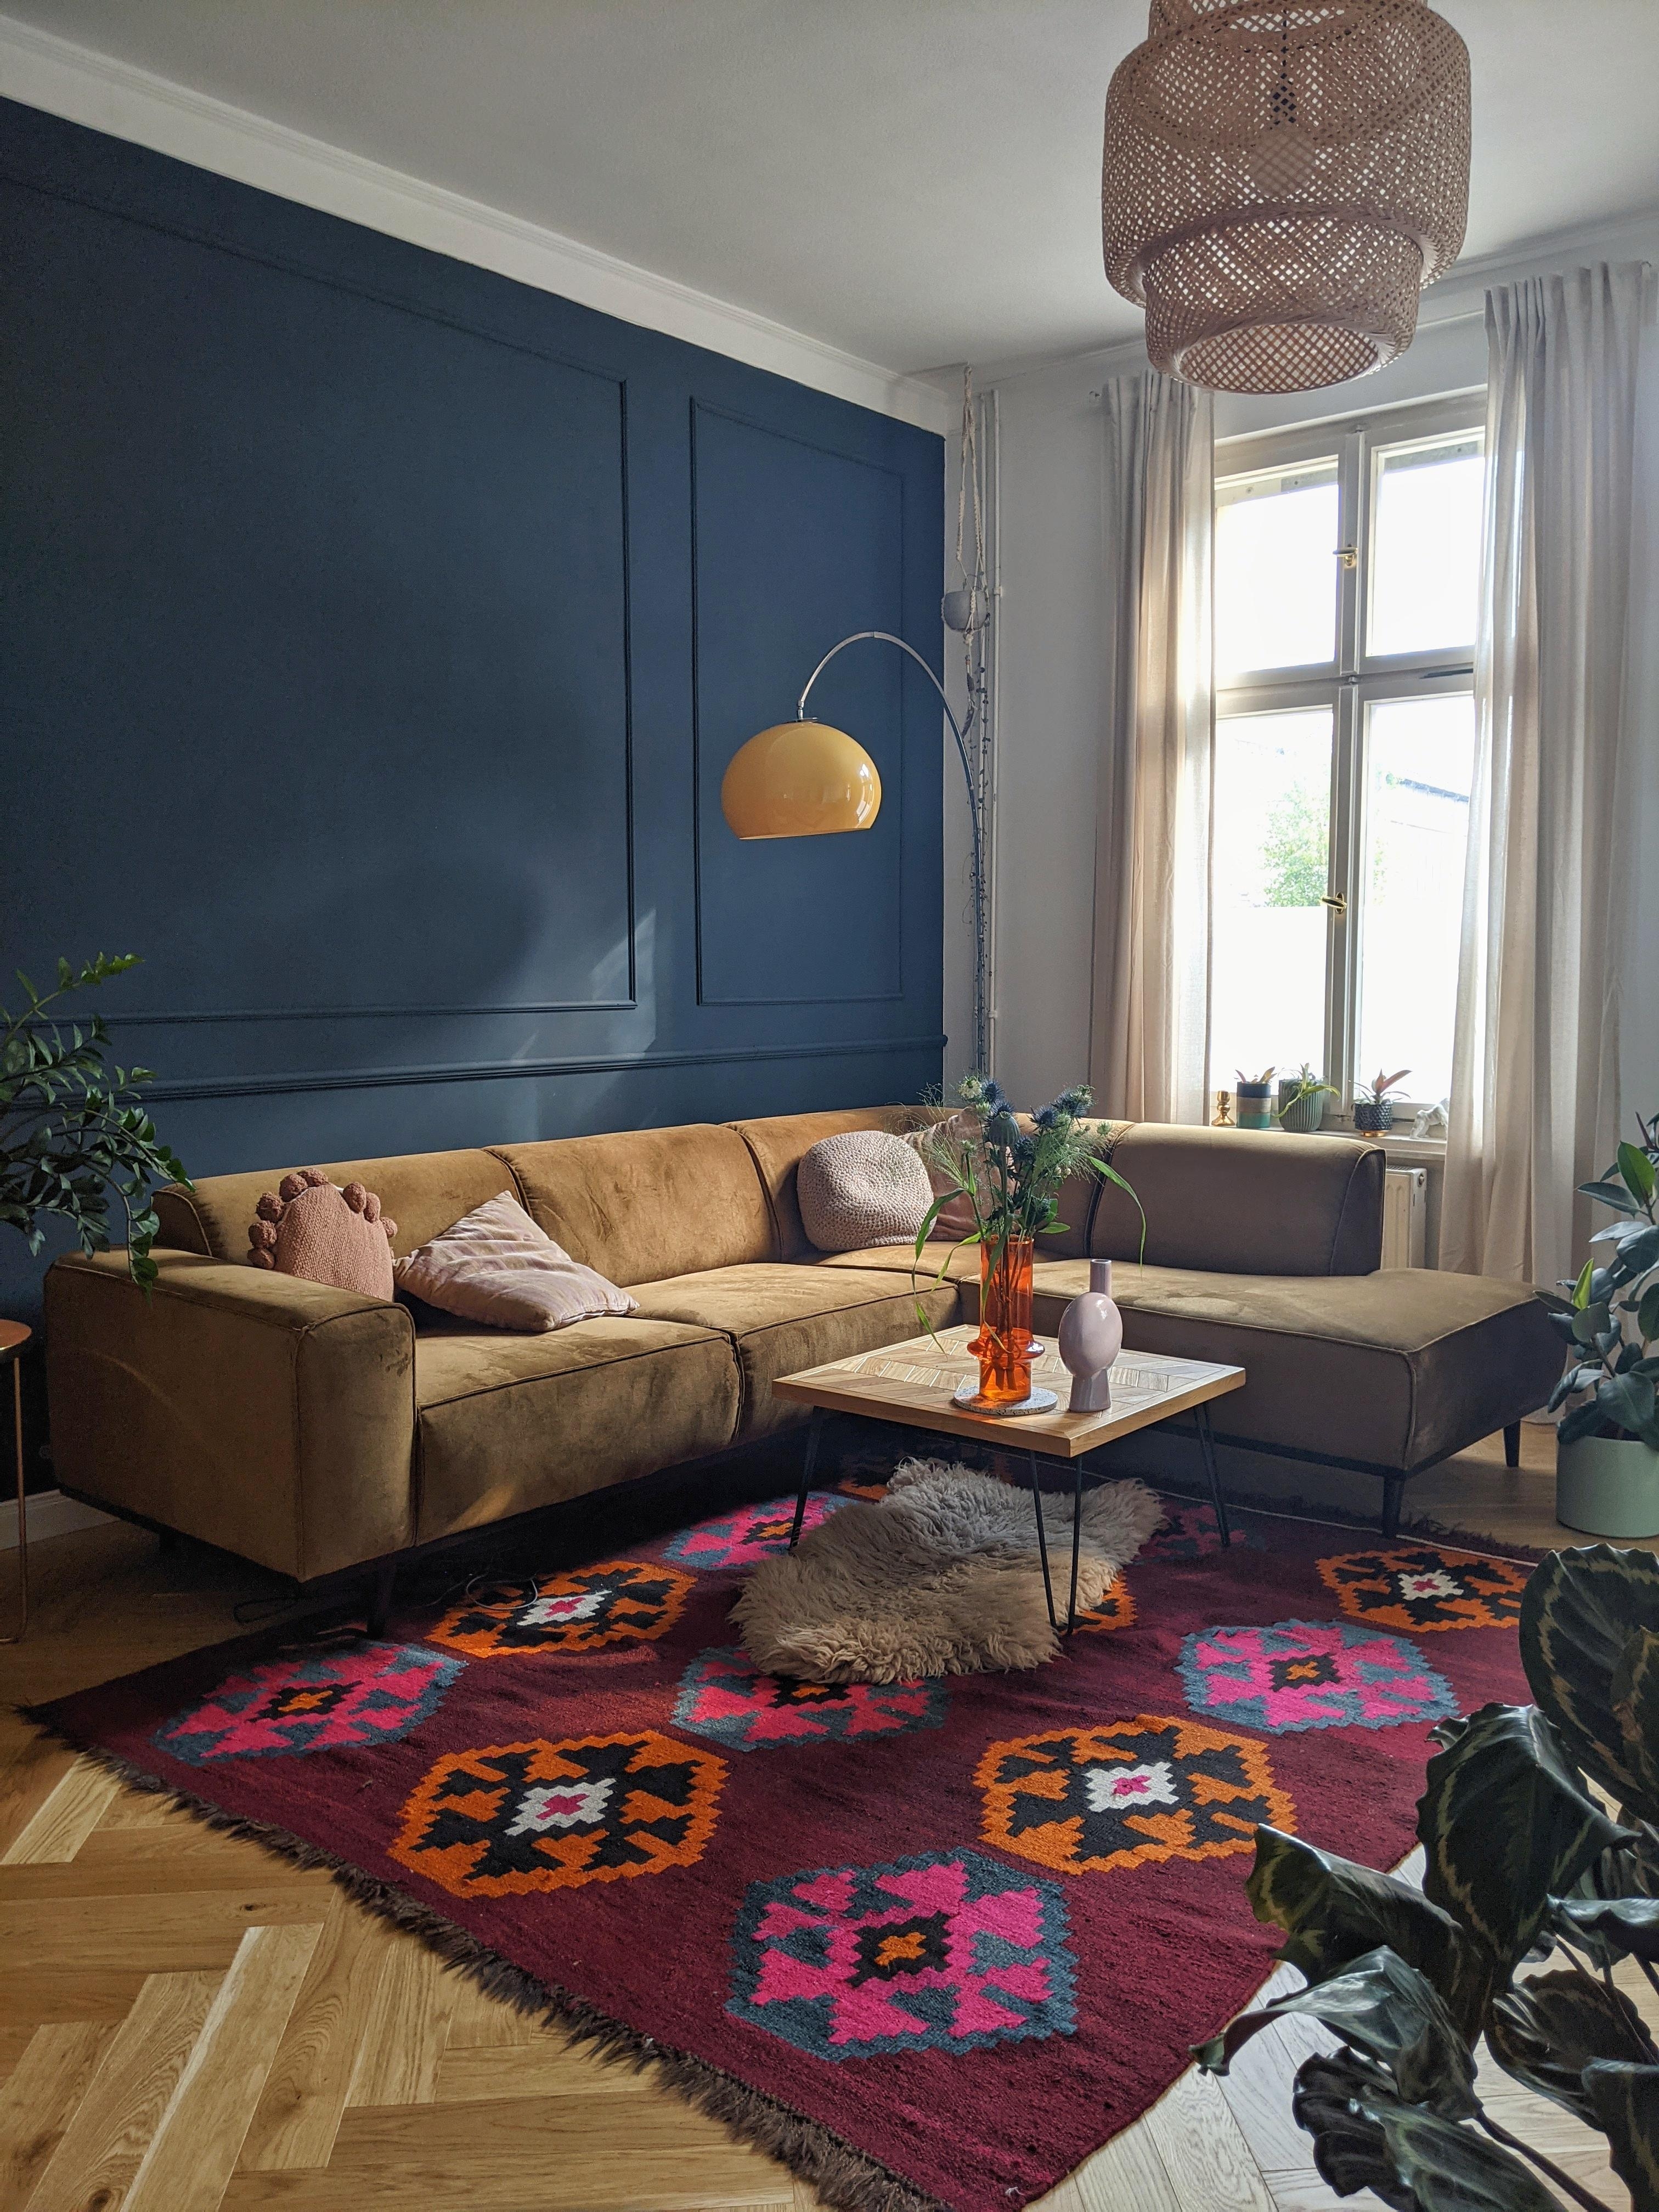 Willkommen in meiner neuen Wohnung ☺️🌾❤️
#wohnzimmer #teppich #wandfarbe #ecksofa #midcentury